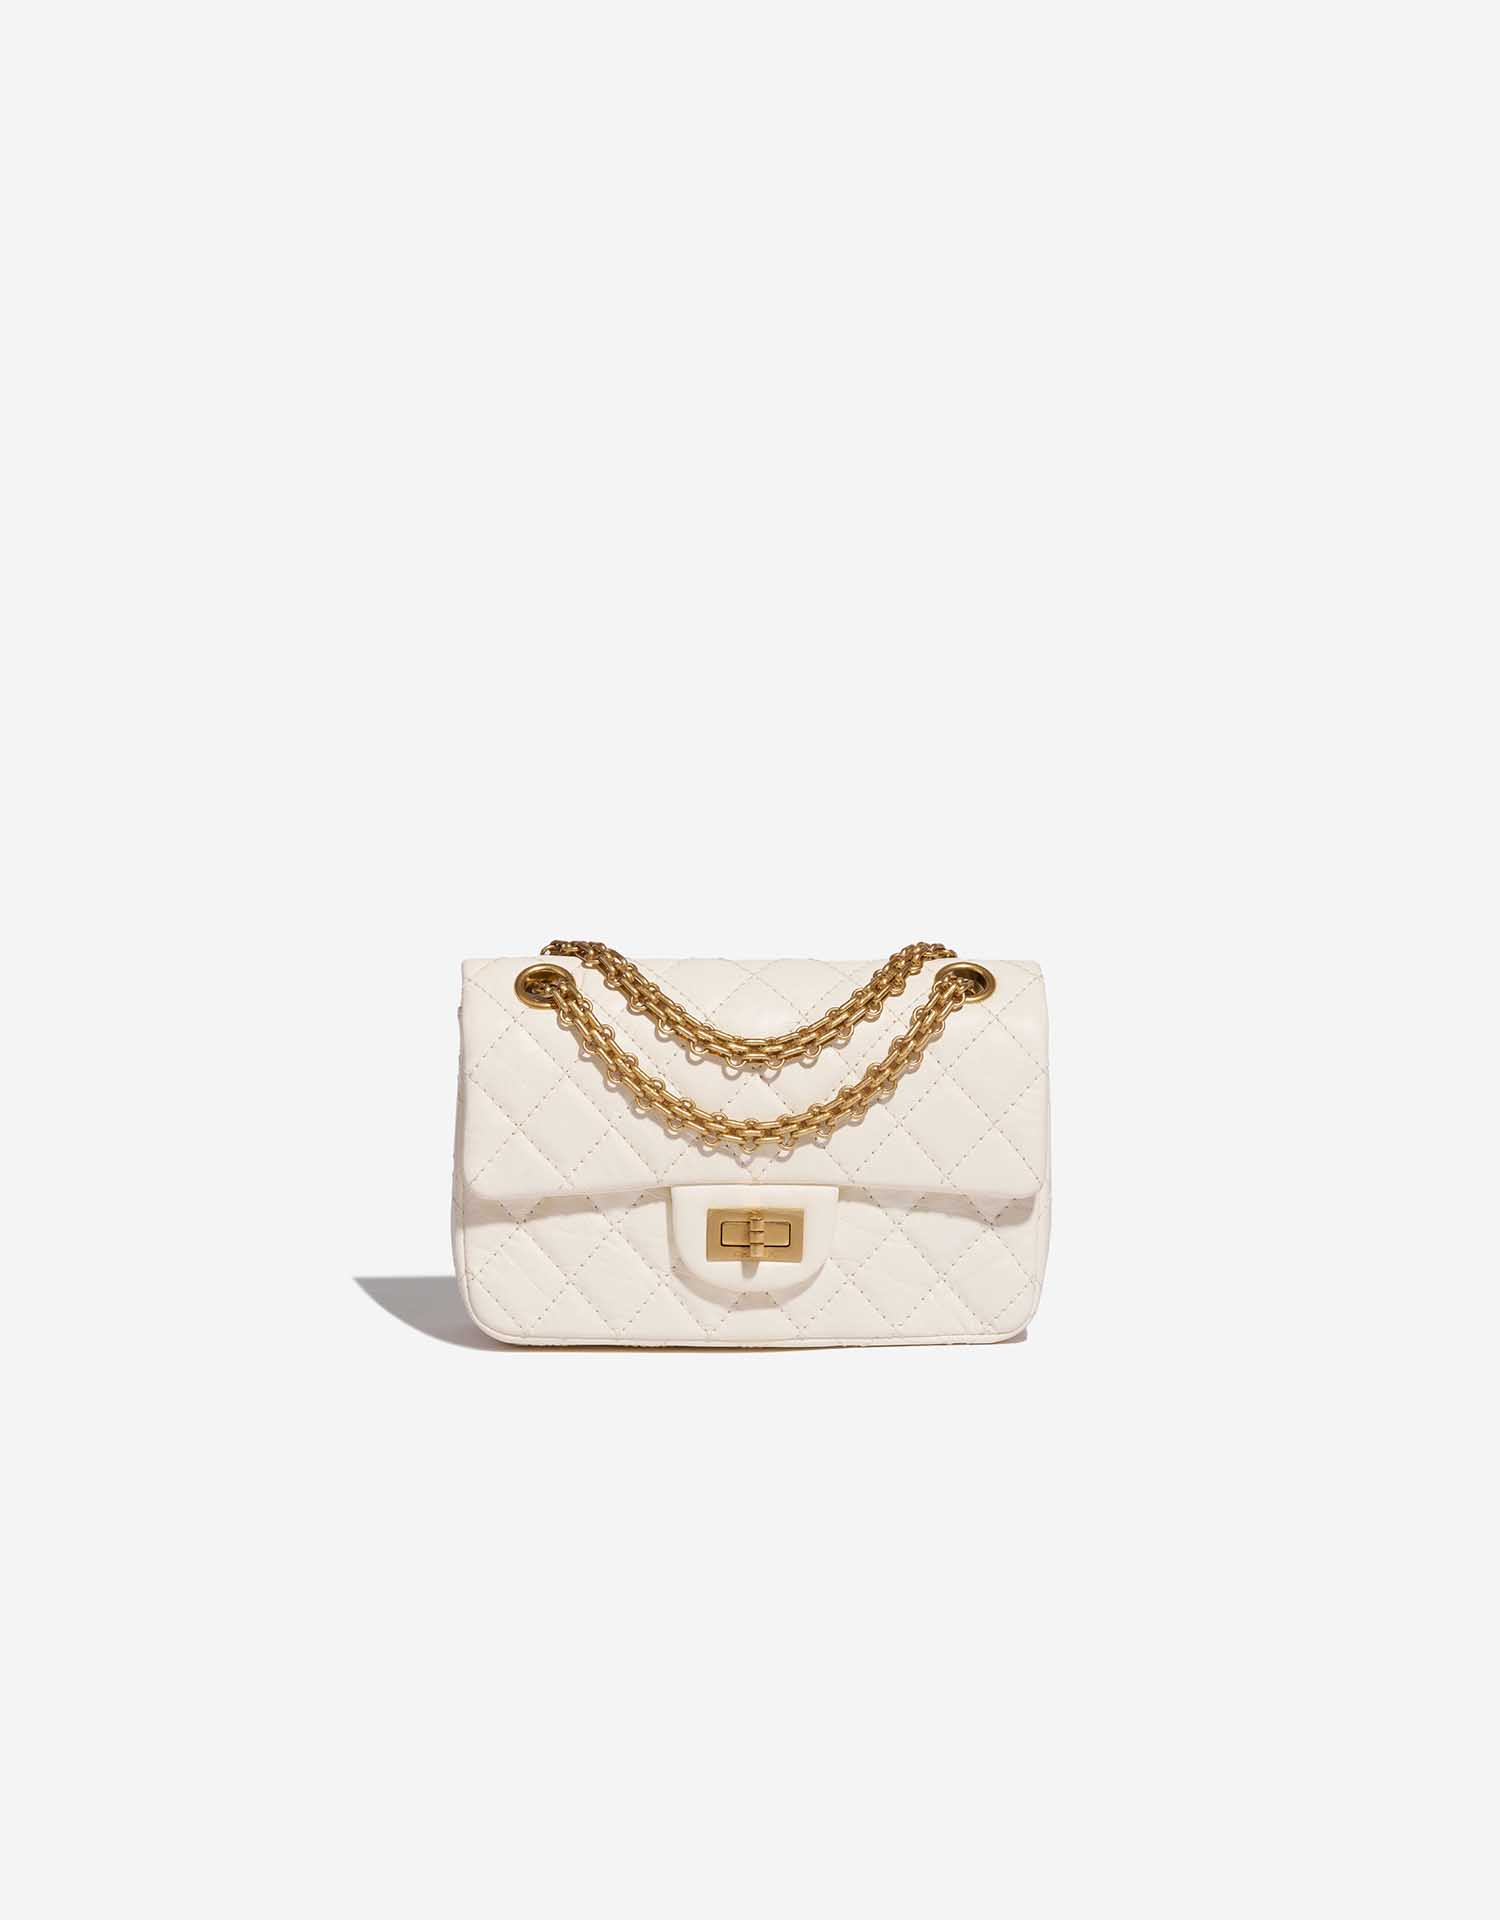 Chanel Reissue 2.55 Flap Bag Quilted Velvet Mini Green 8538657